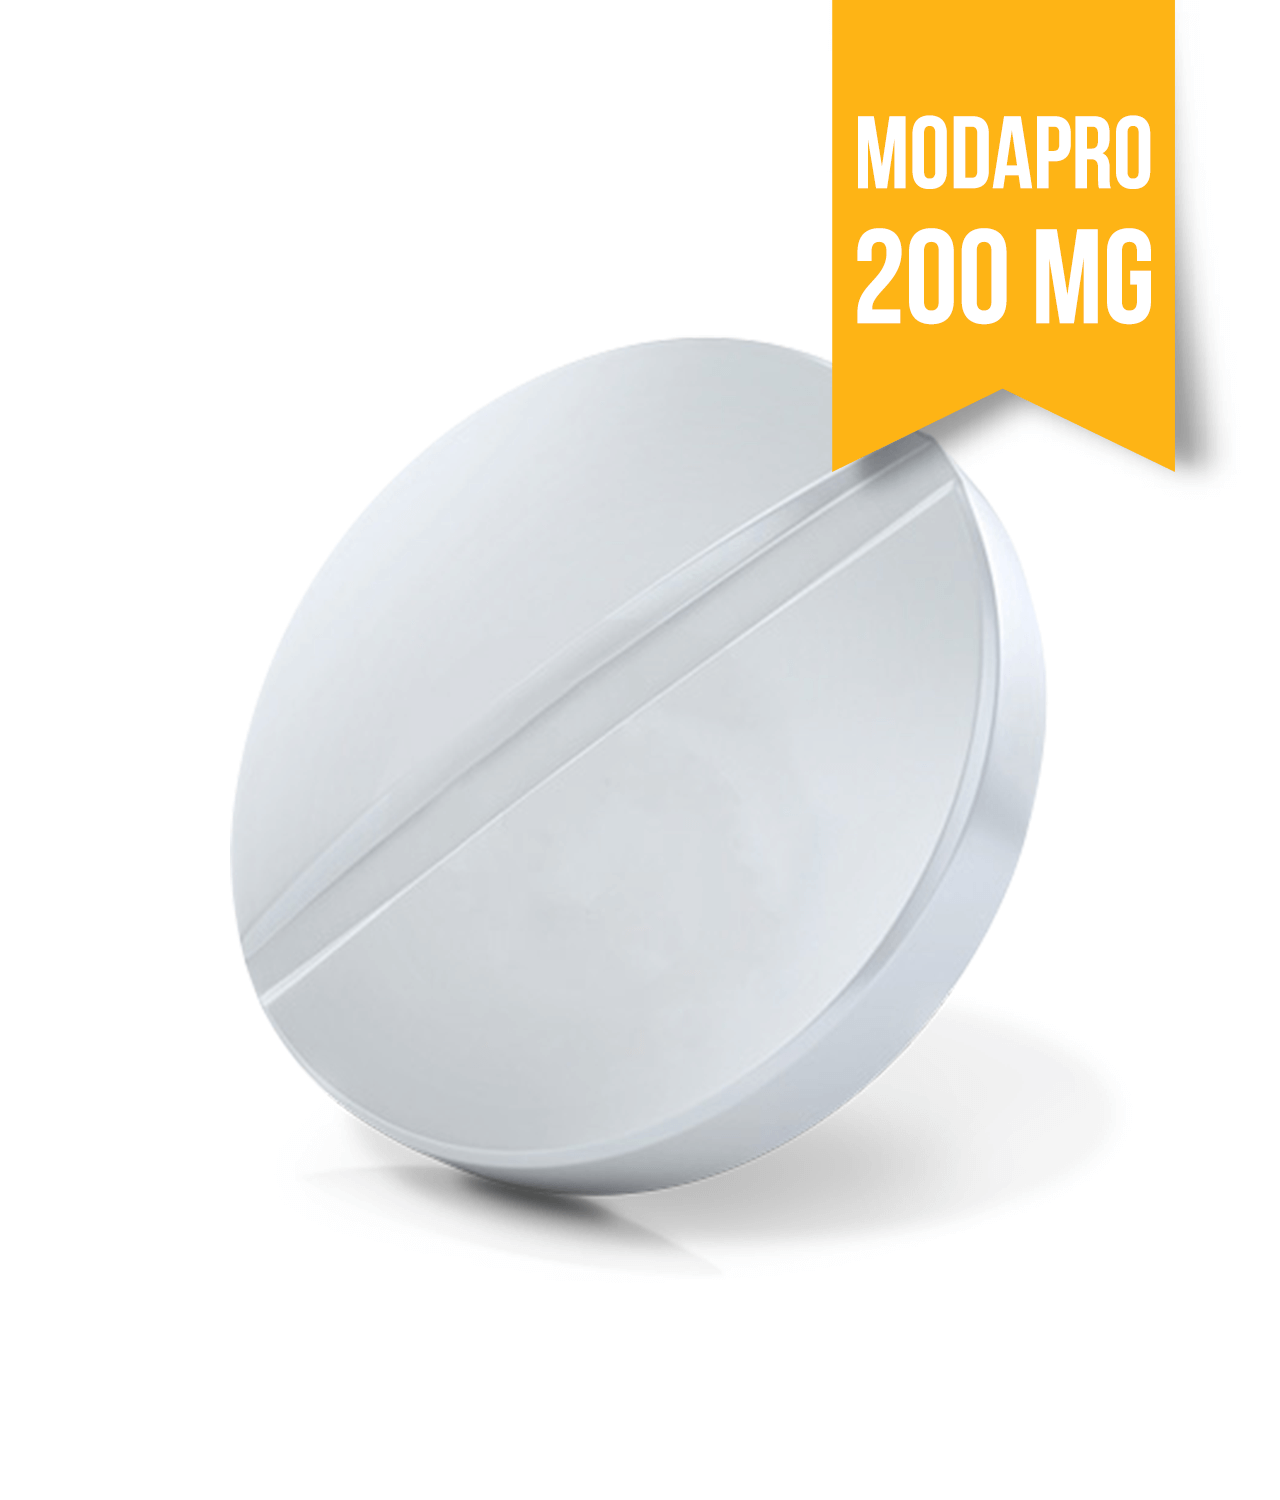 Modapro 200 mg